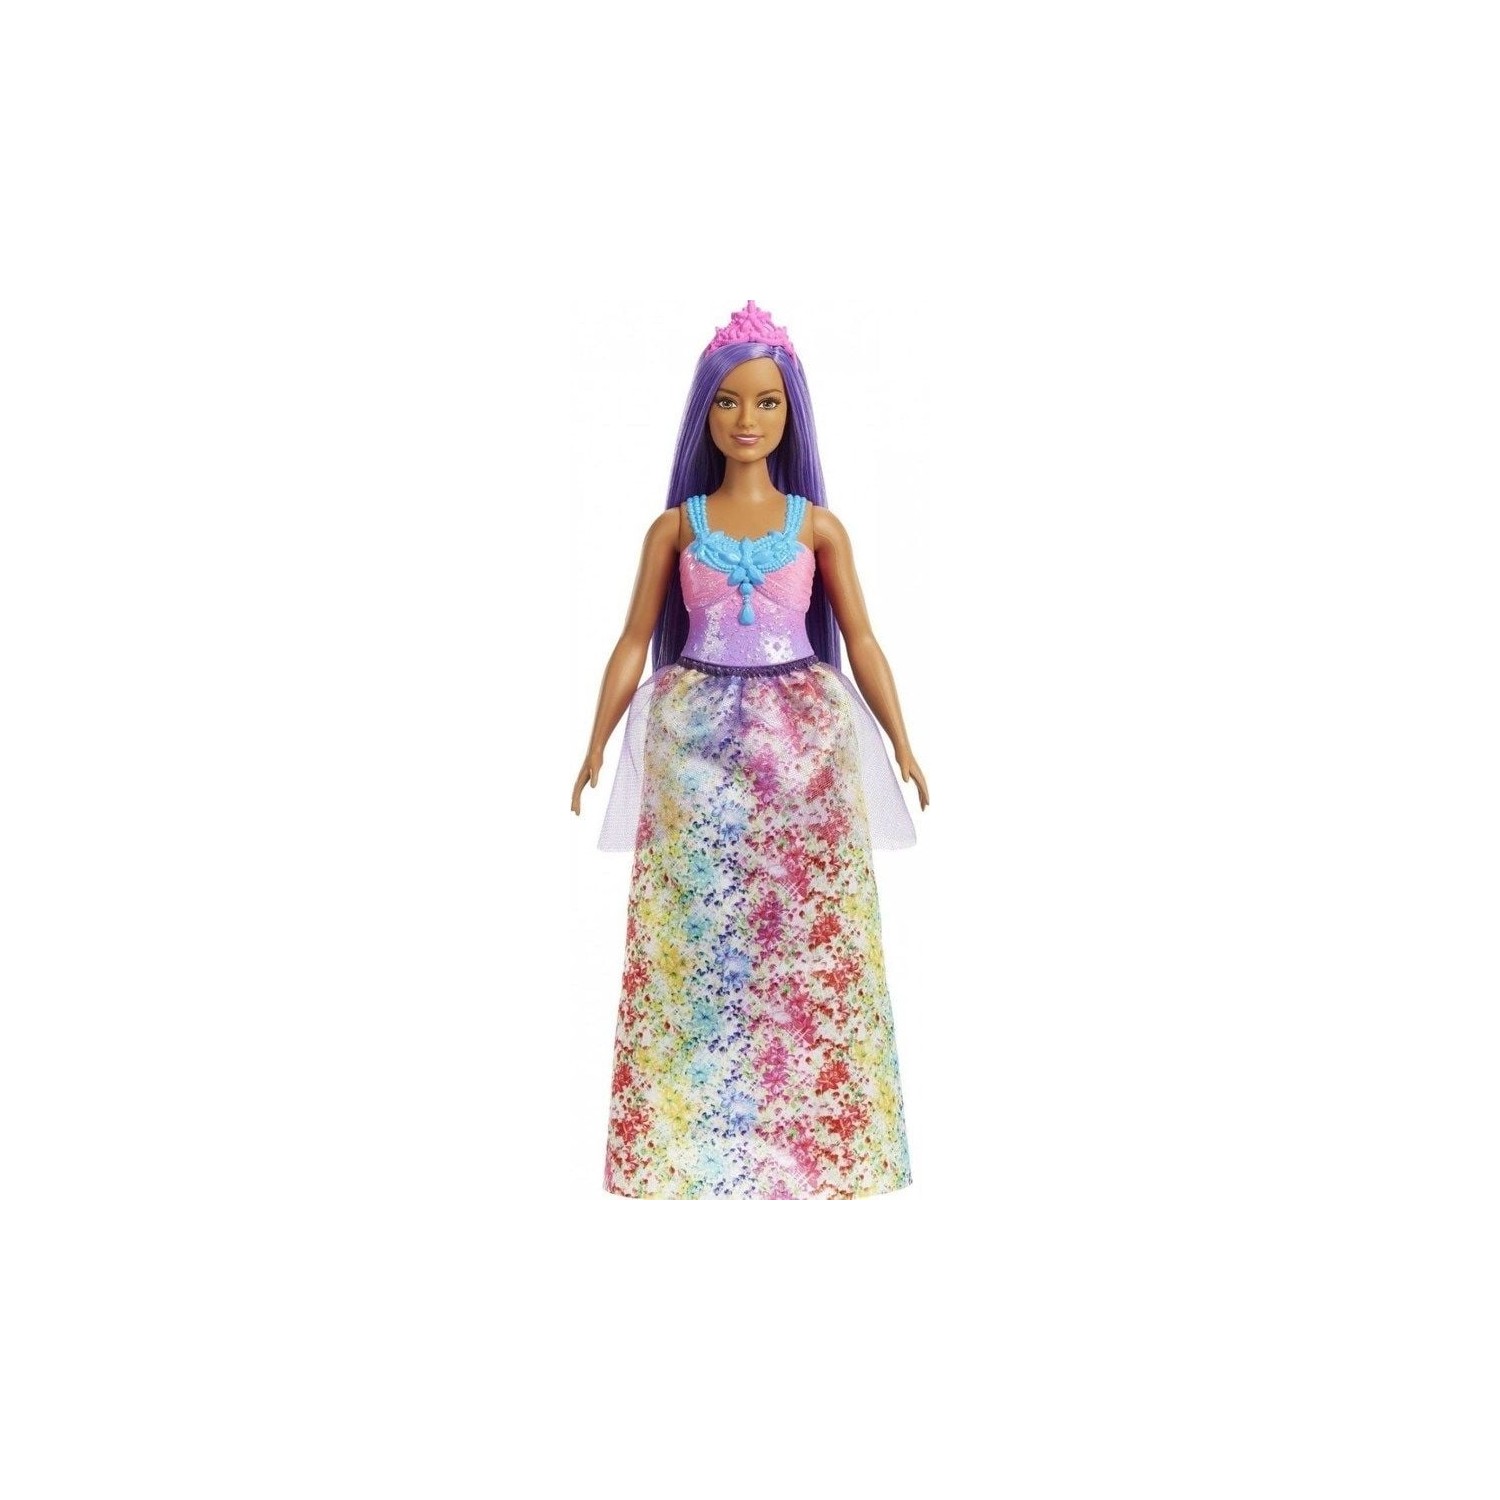 Кукла Barbie Dreamtopia Princess Dolls HGR16